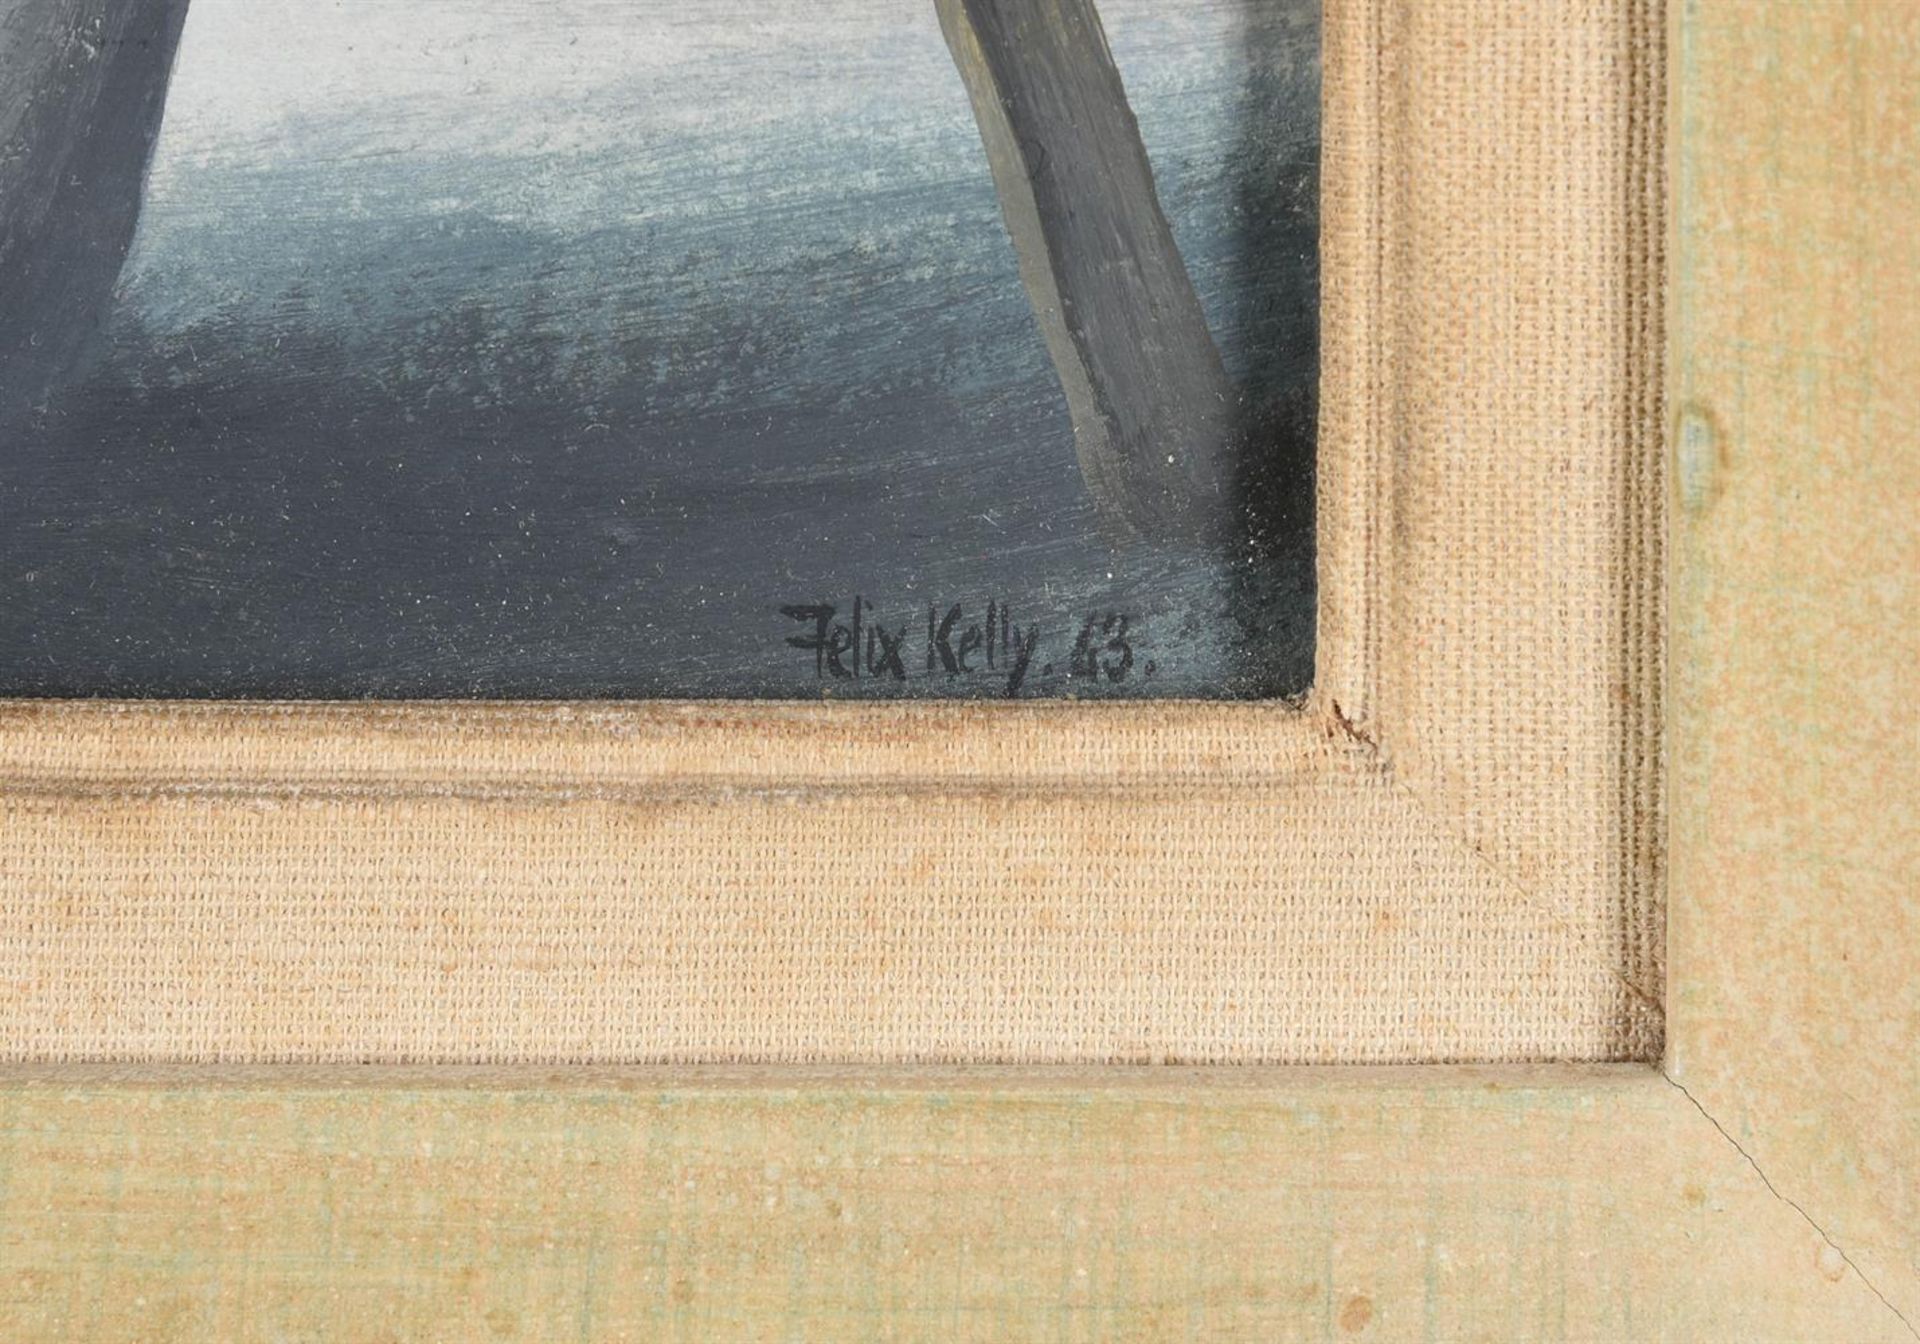 λ FELIX KELLY (BRITISH 1914-1994), FIGURES IN A STREET - Image 4 of 4